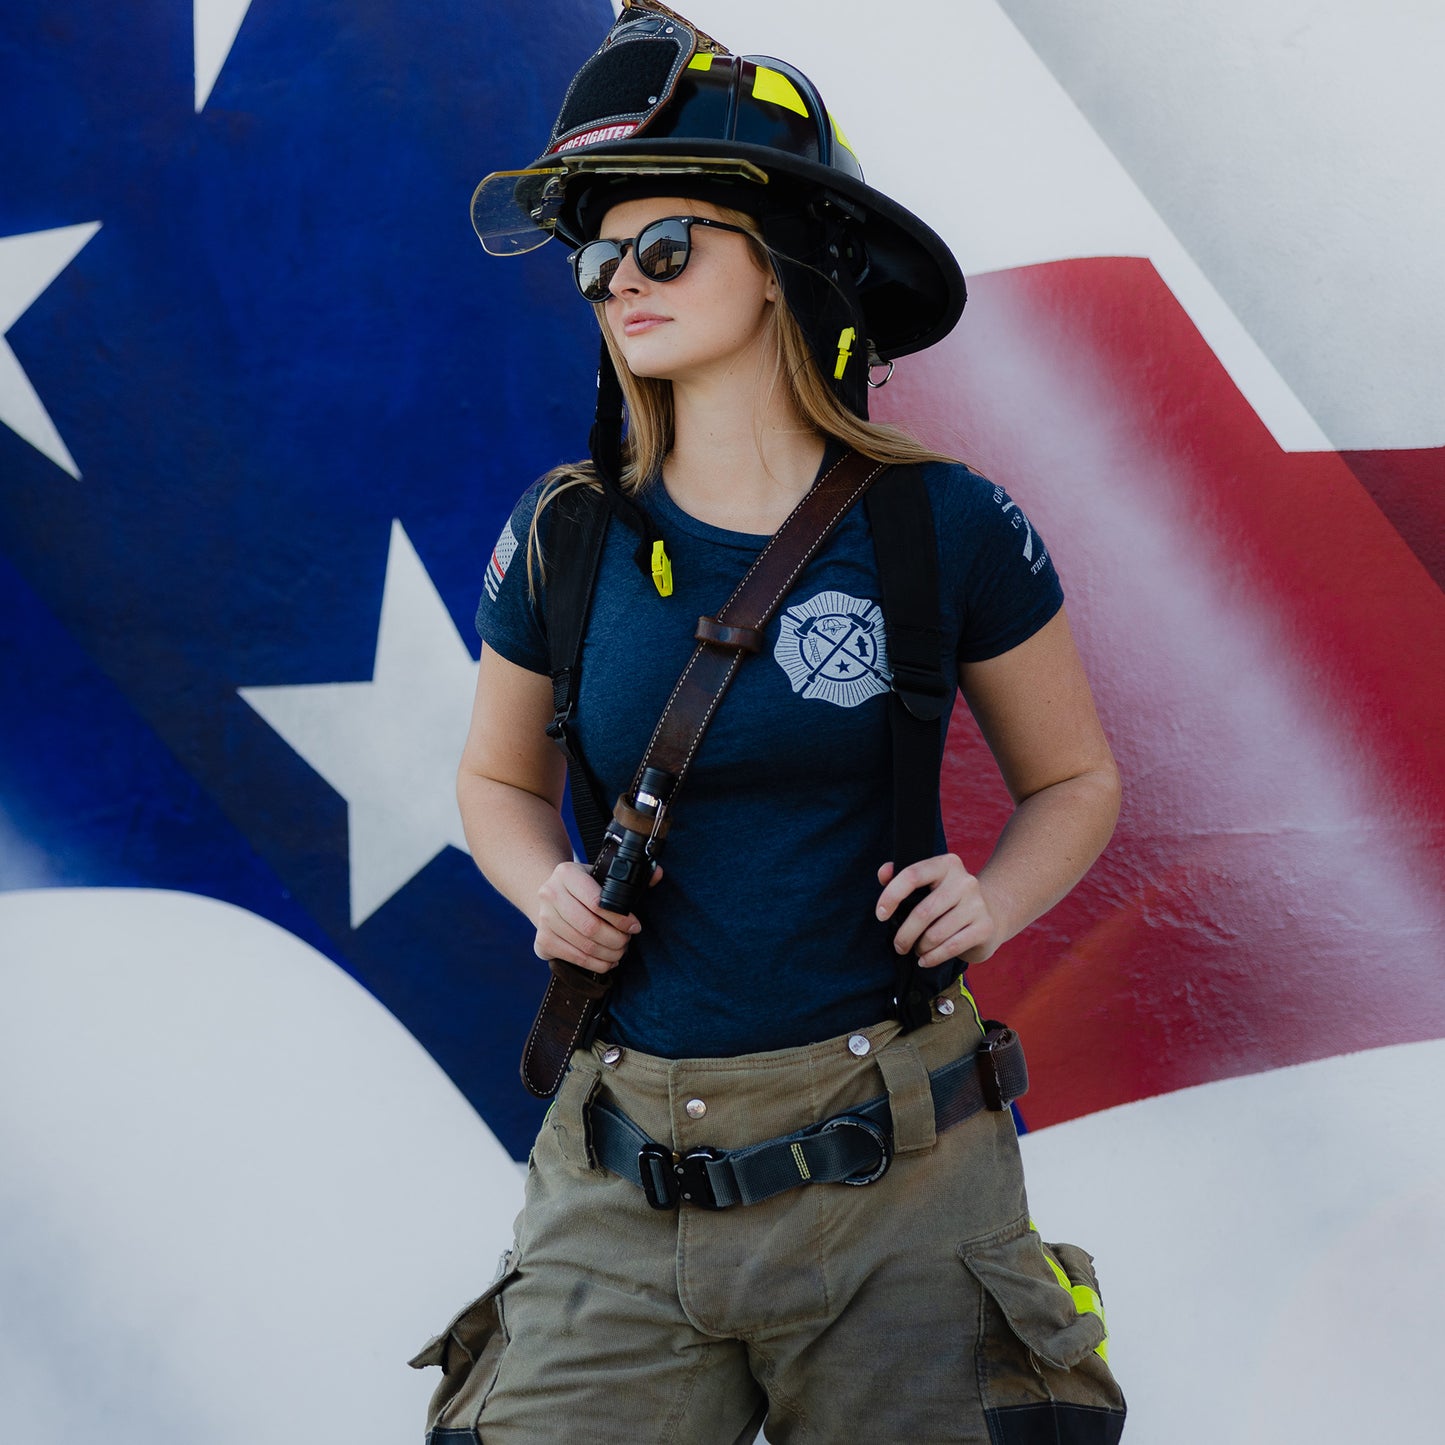 Firefighter Shirt for Women  - Wherever Flames May Range